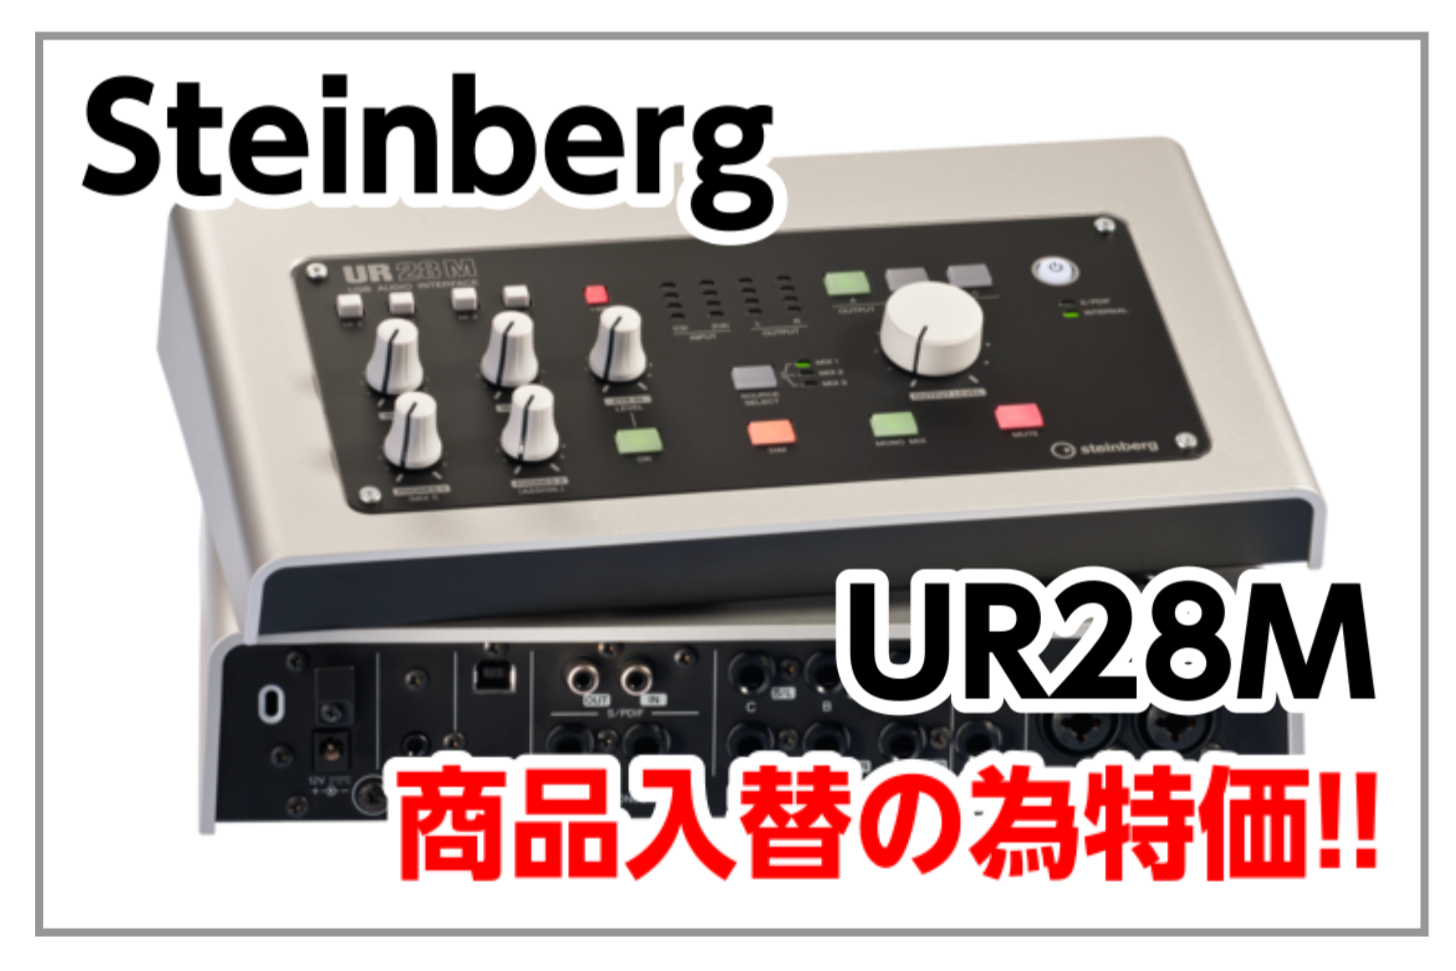 *Steinberg UR28M 店頭品入替特価!!【配信にもおススメ】 デスクトップタイプのボディに、D-PRE マイクプリアンプ搭載アナログ入出力、デジタル入出力、DSP コンソール機能を装備。]]3系統のモニターコントロールも可能な、24-bit / 96kHz 対応 USB 2.0 オーディ […]